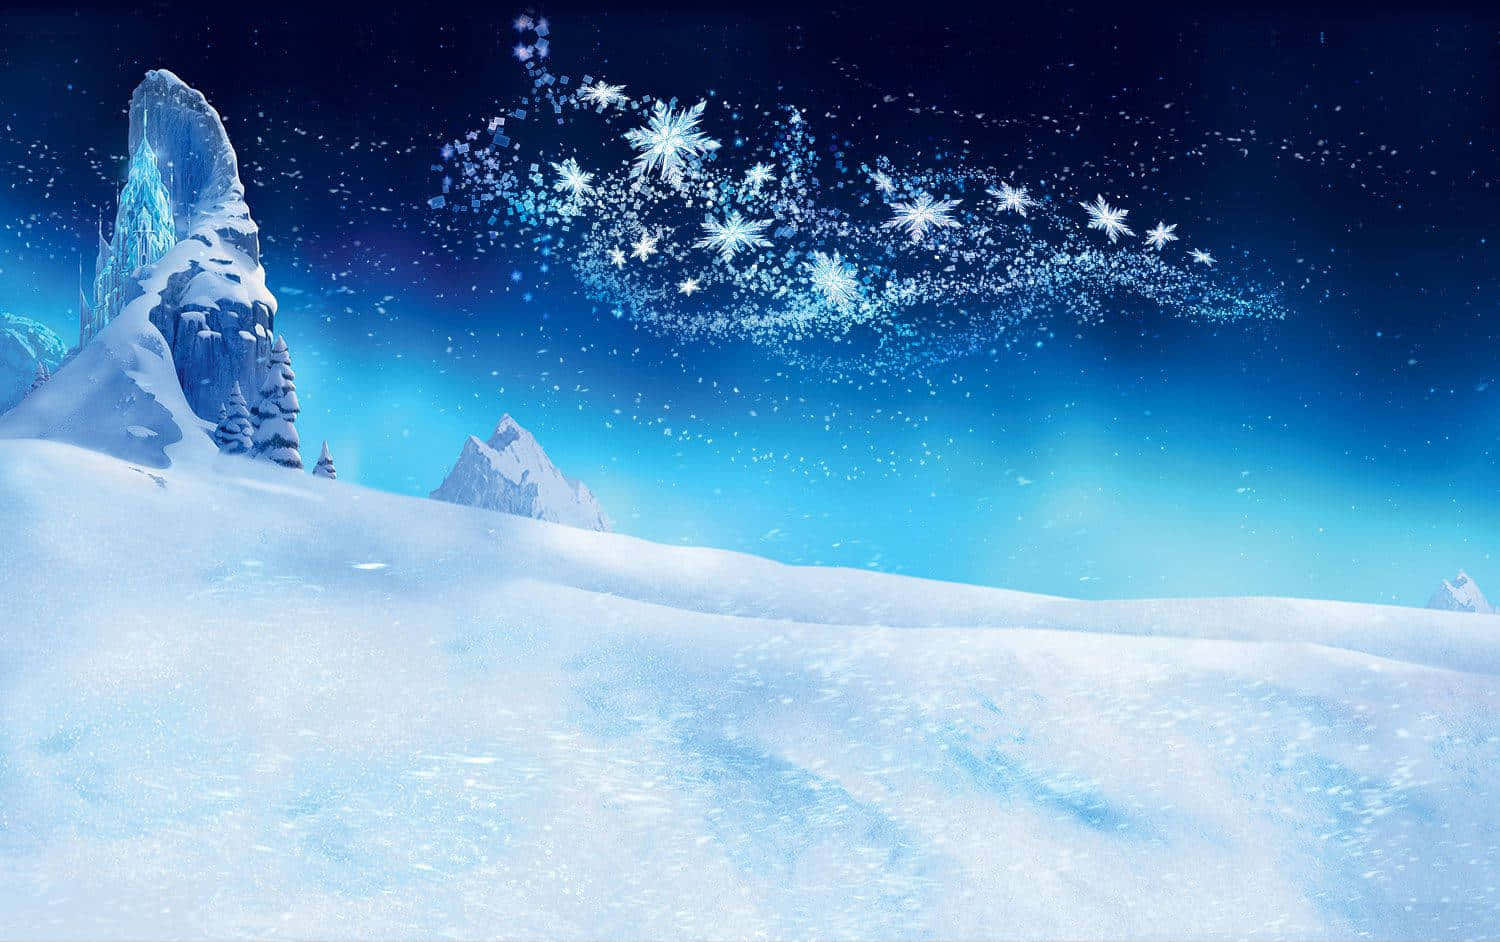 Enchanting Frozen Castle in a Winter Wonderland